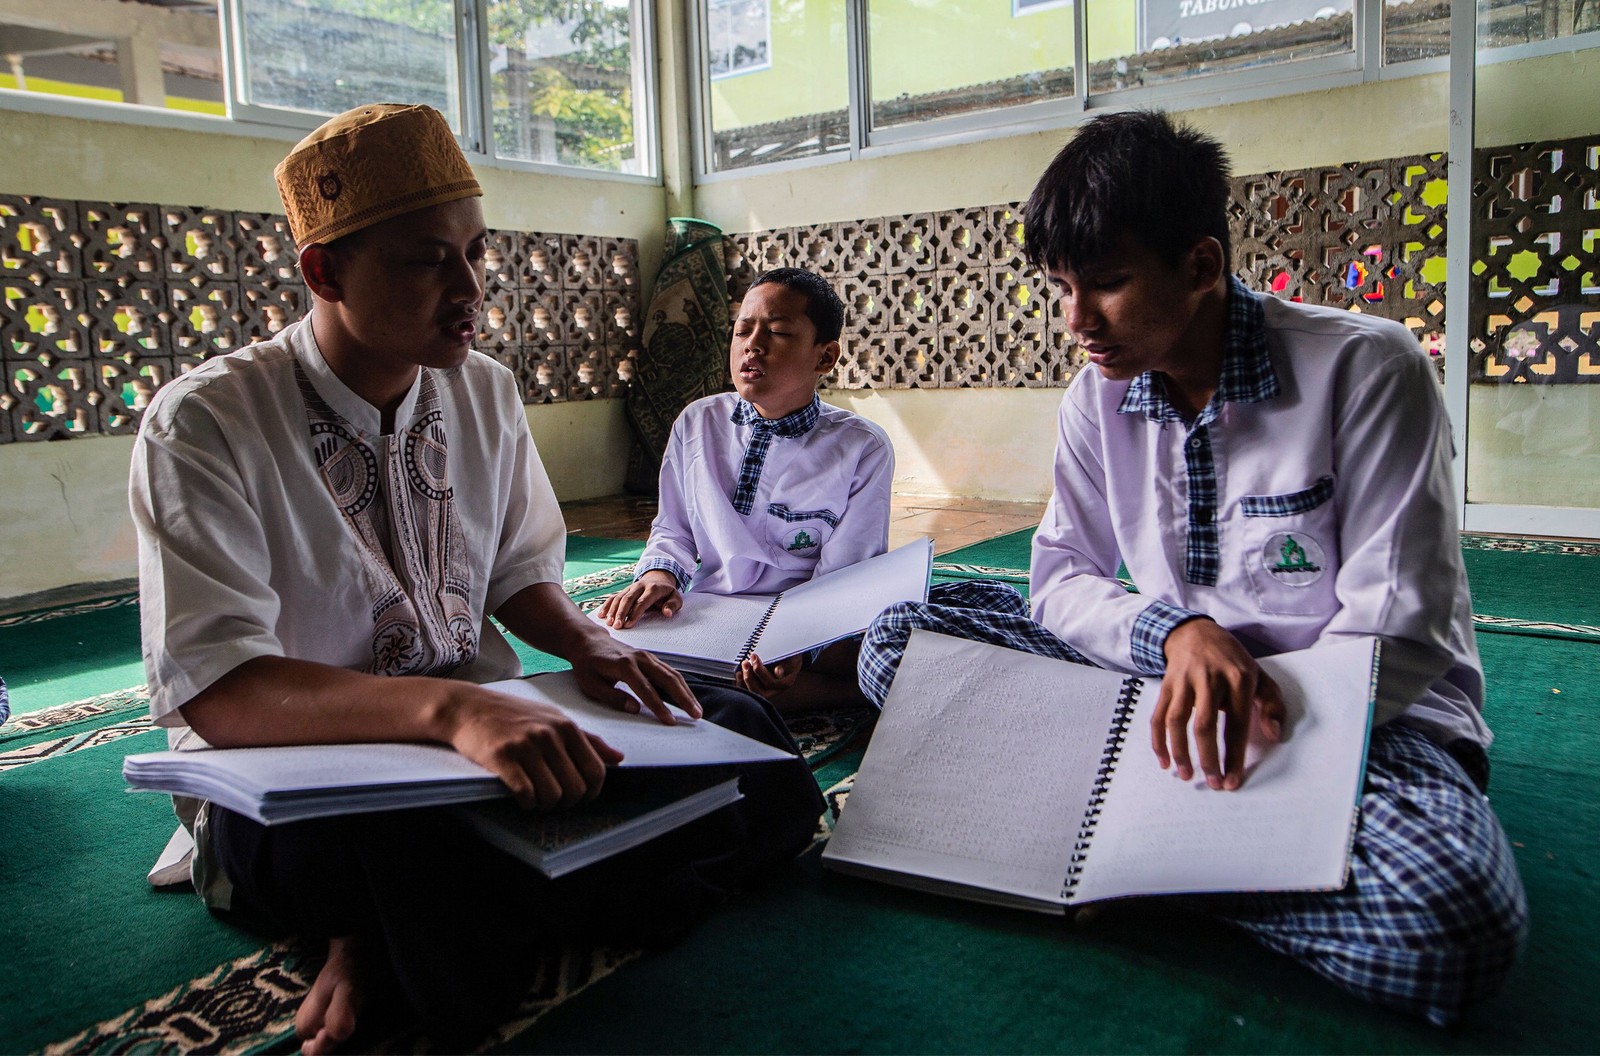 Estudantes muçulmanos com deficiência visual leem cópias do Alcorão em braille em um internato em Bogor, na Indonésia — Foto: ADITYA AJI / AFP